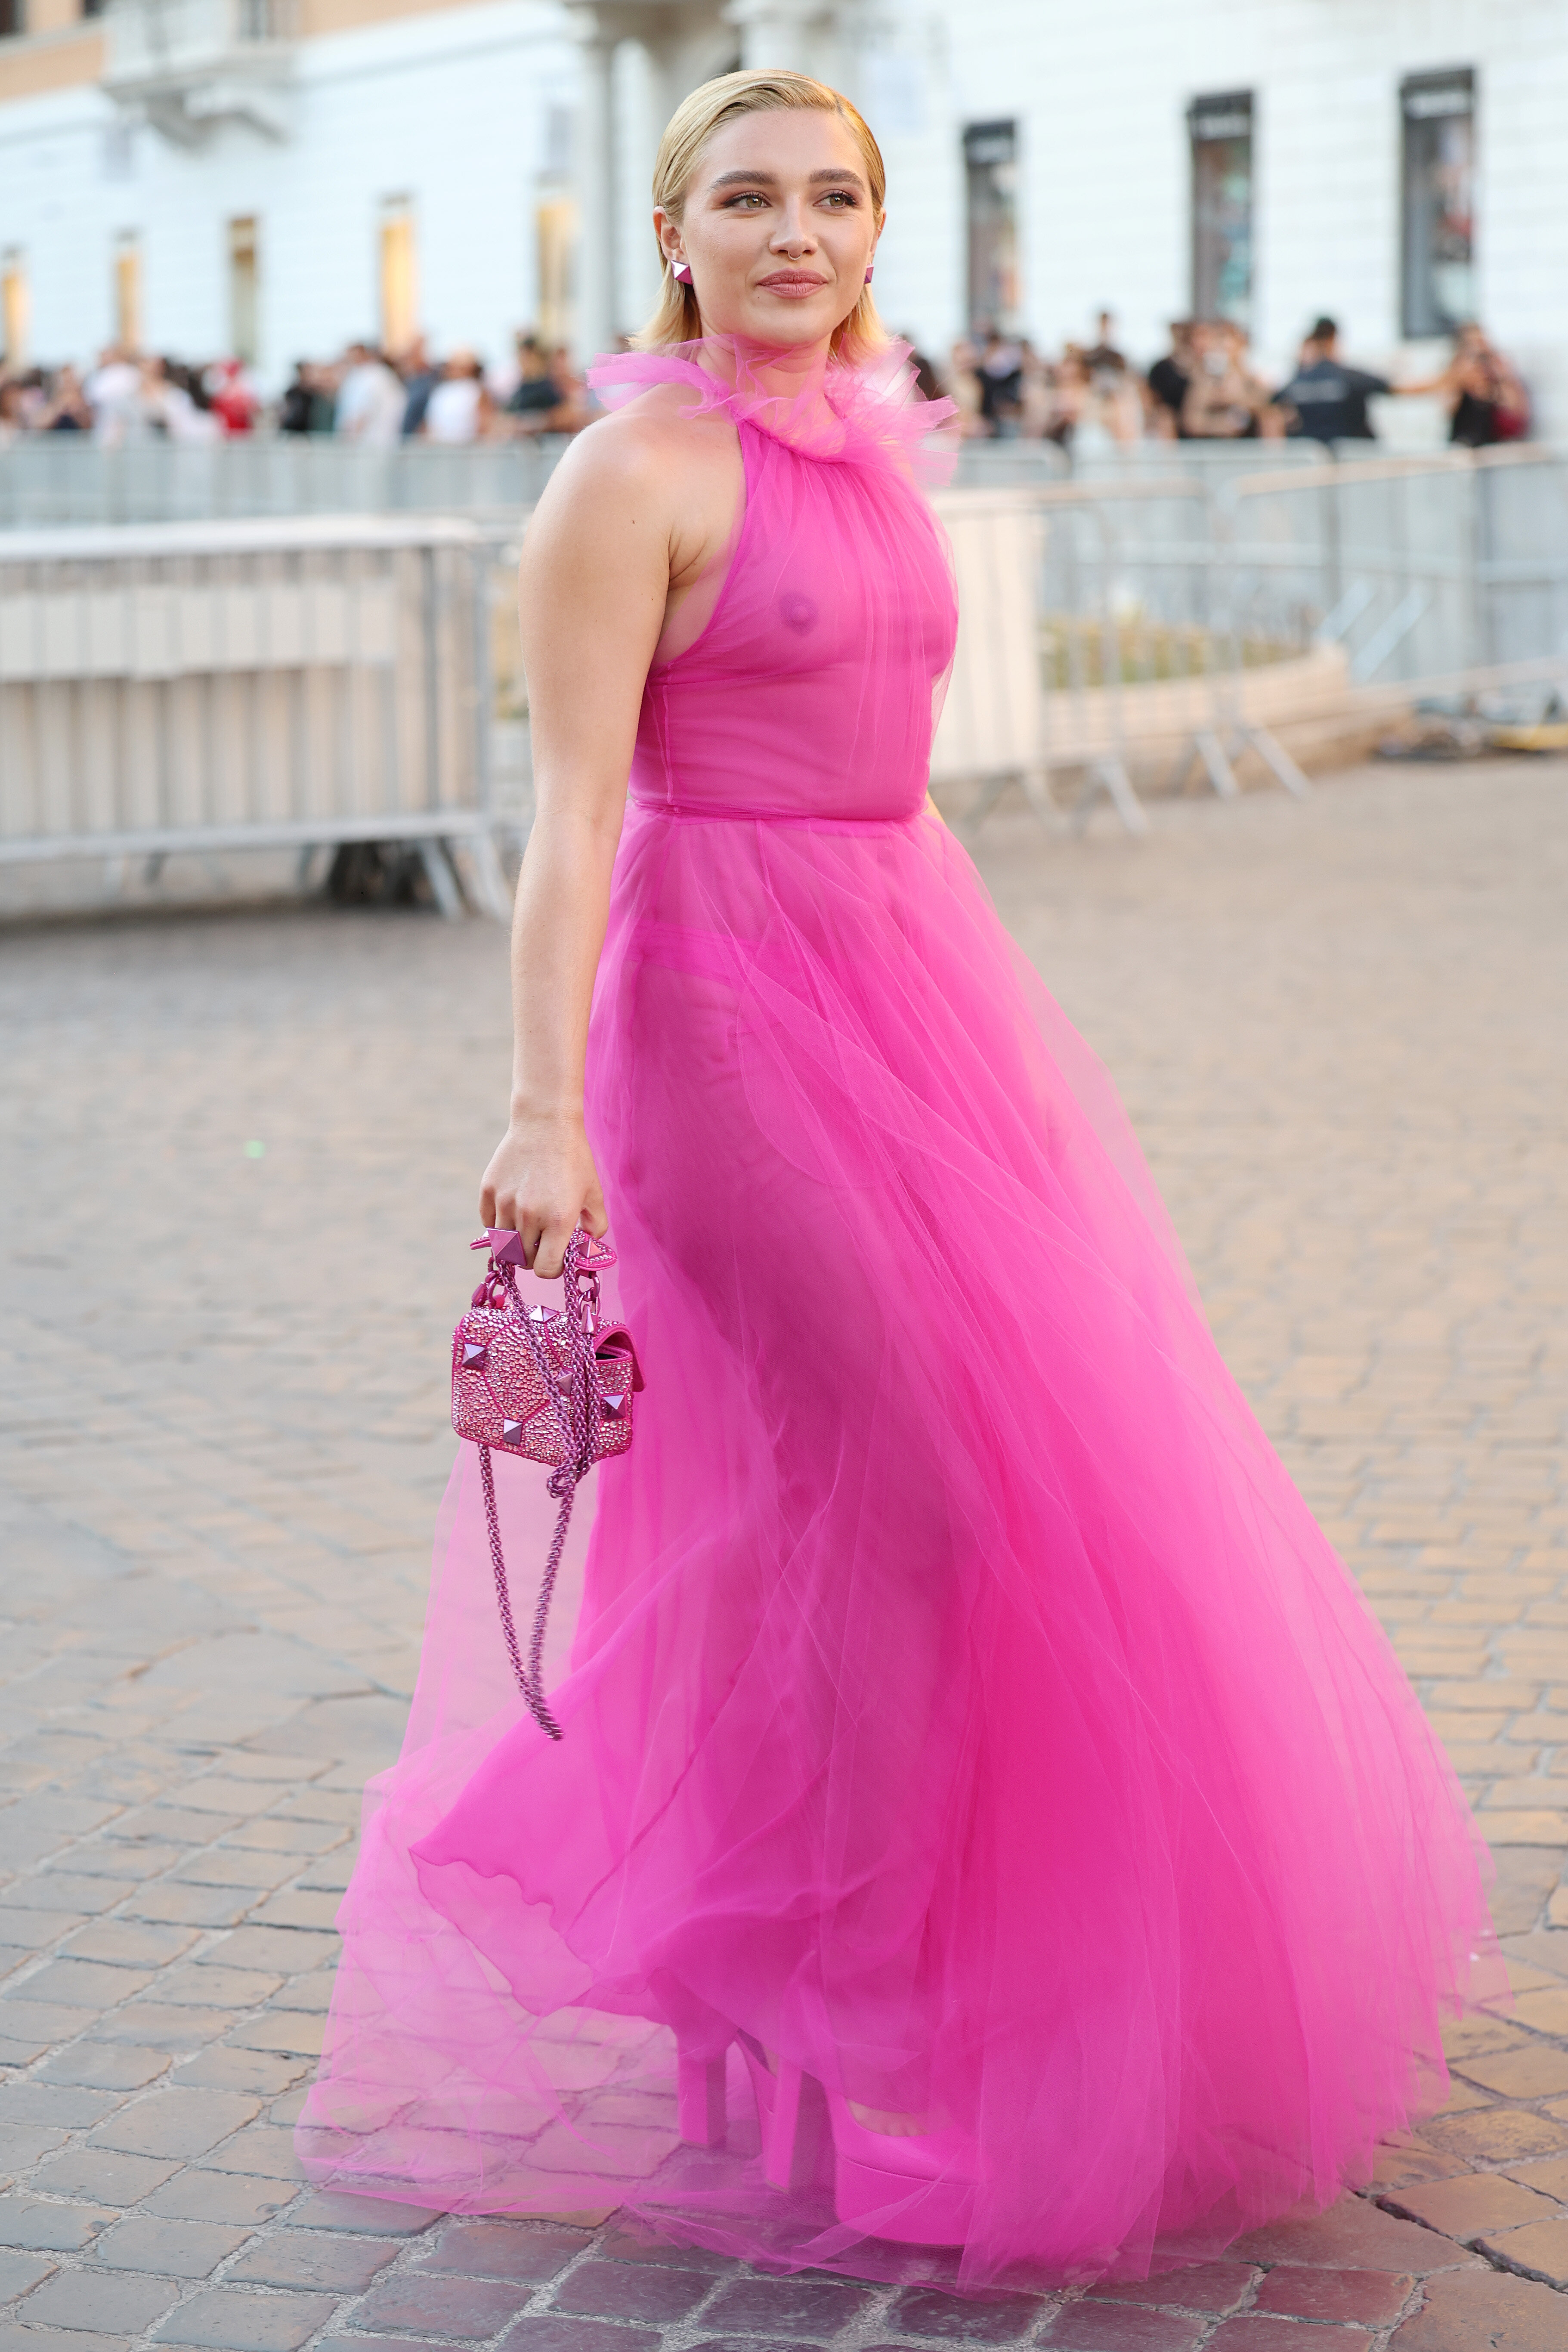 Zendaya's Valentino Dress at the 2022 Emmys | POPSUGAR Fashion UK